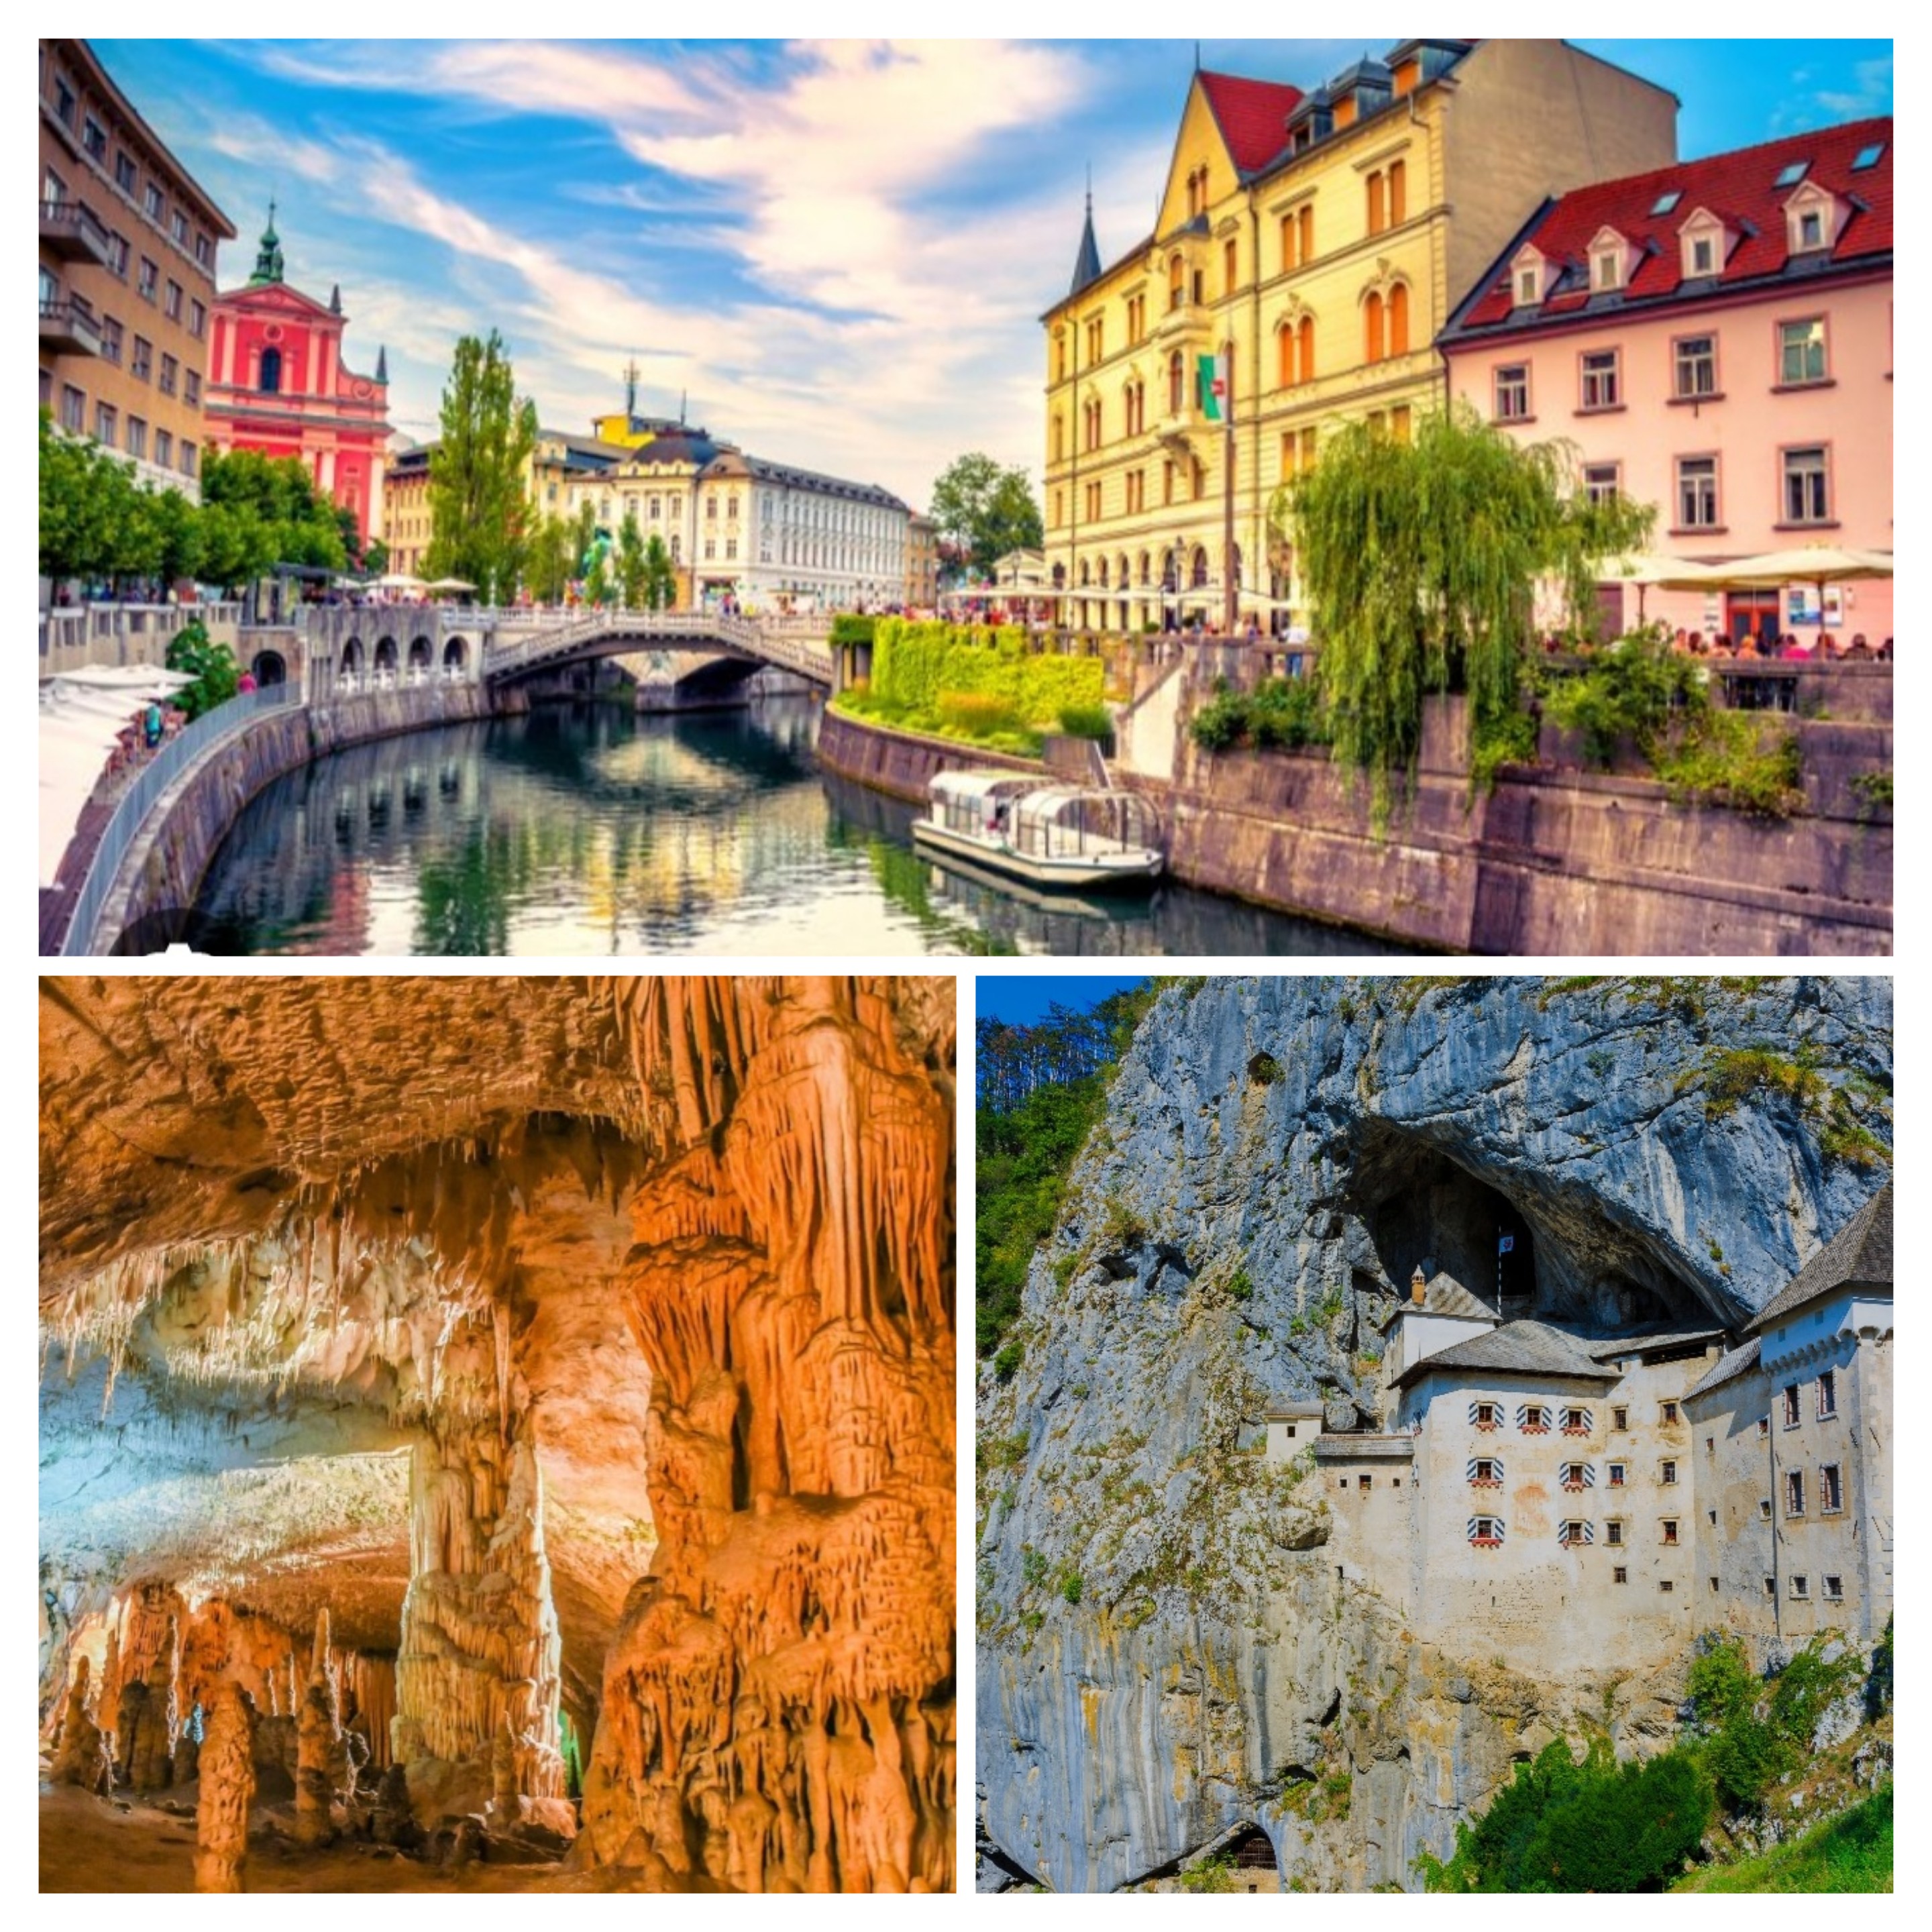 Tour della Slovenia. Lubiana, grotte di Postumia, lago di Bled, Ptuj, Celje